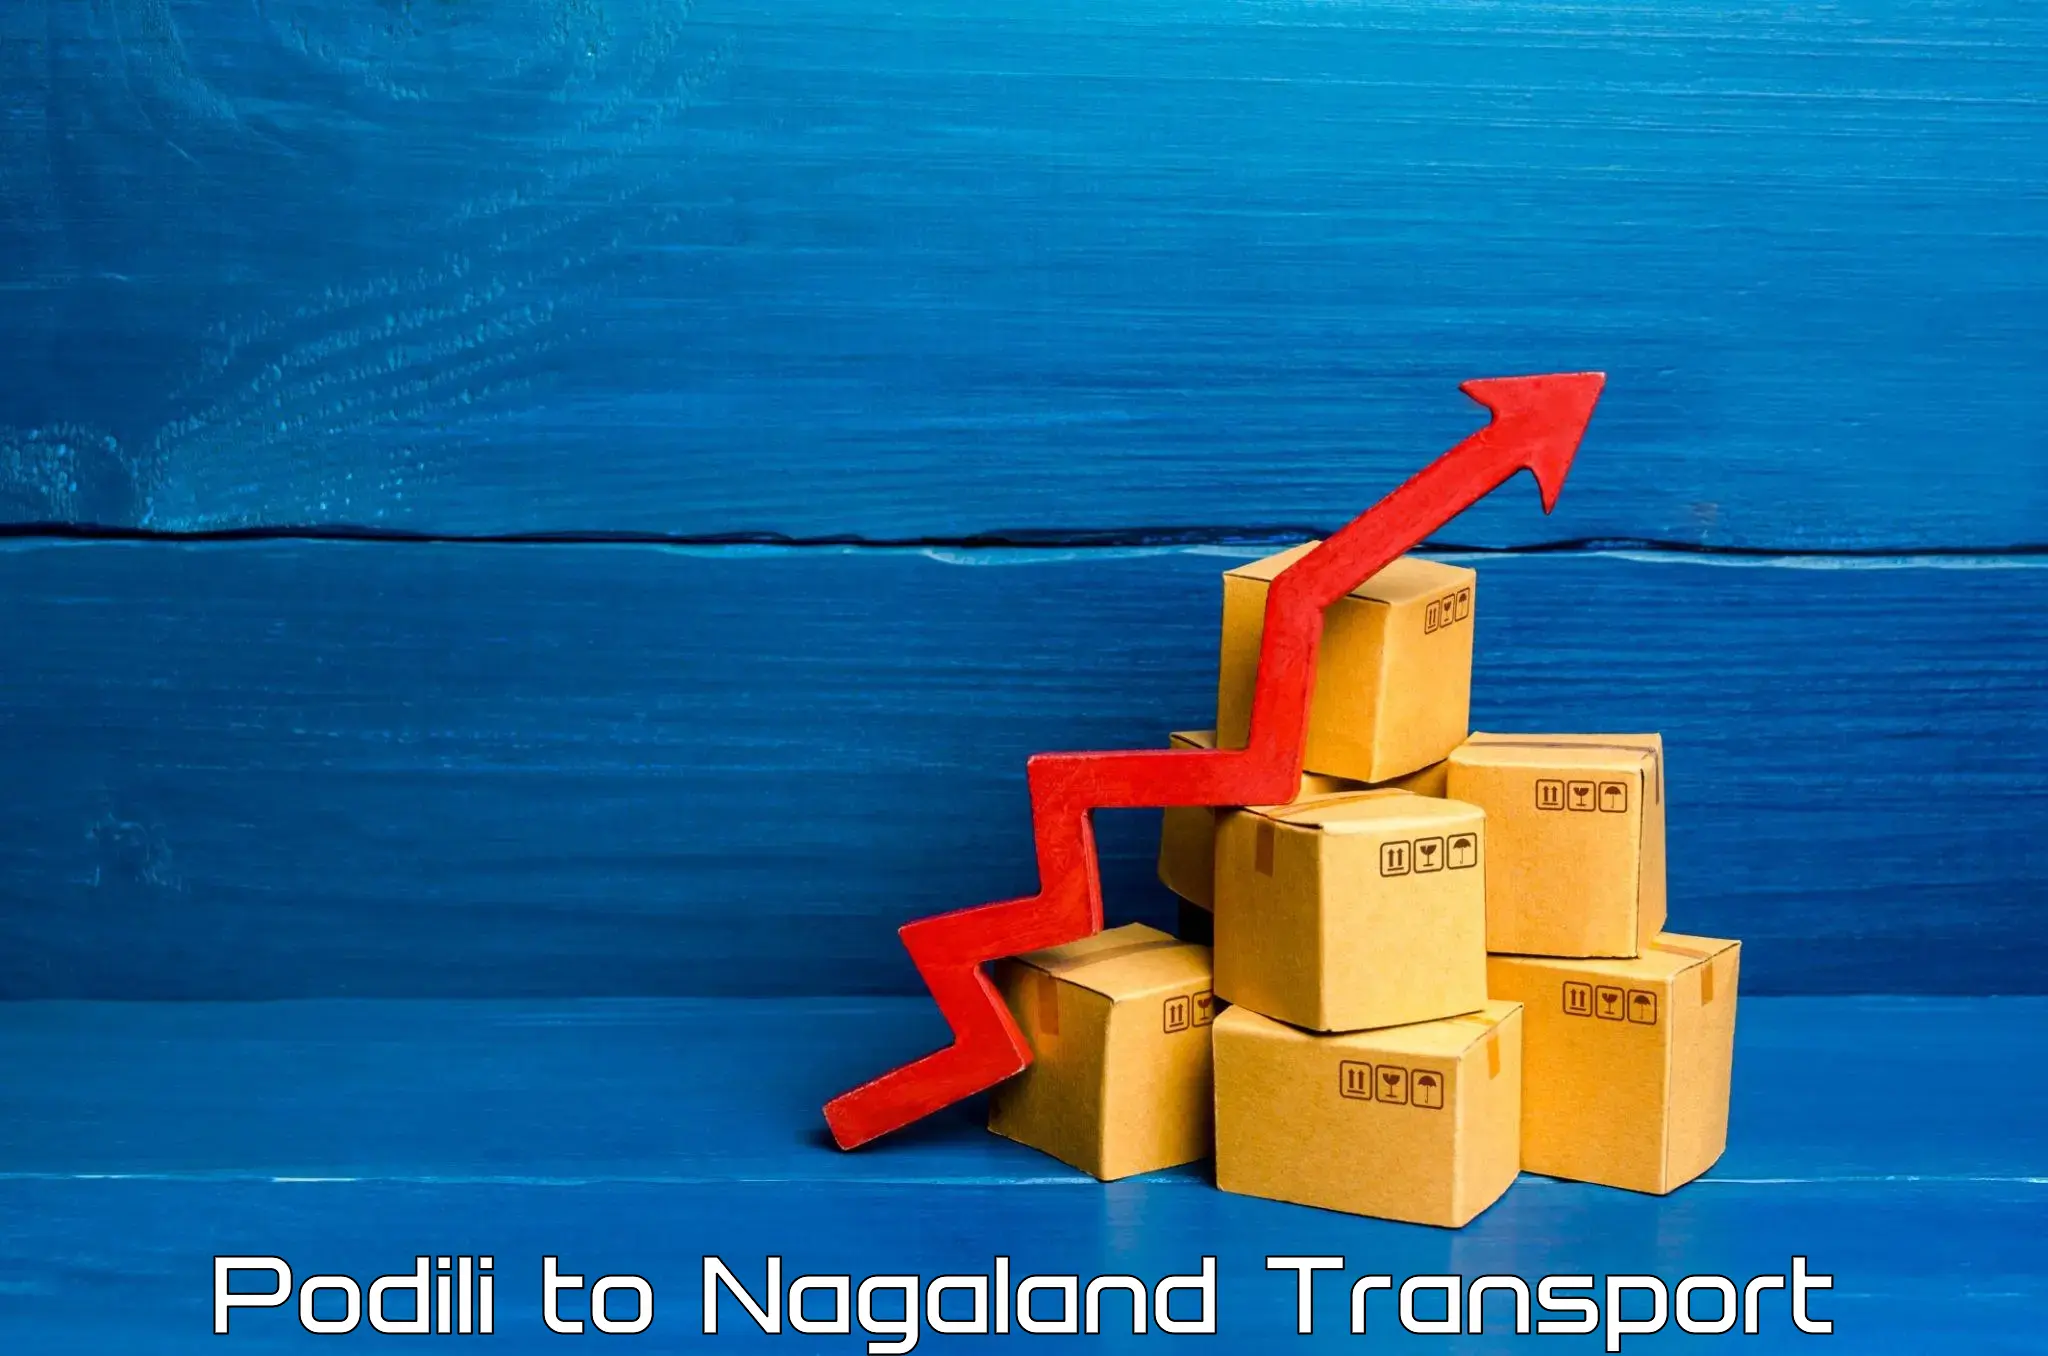 Nearest transport service Podili to NIT Nagaland